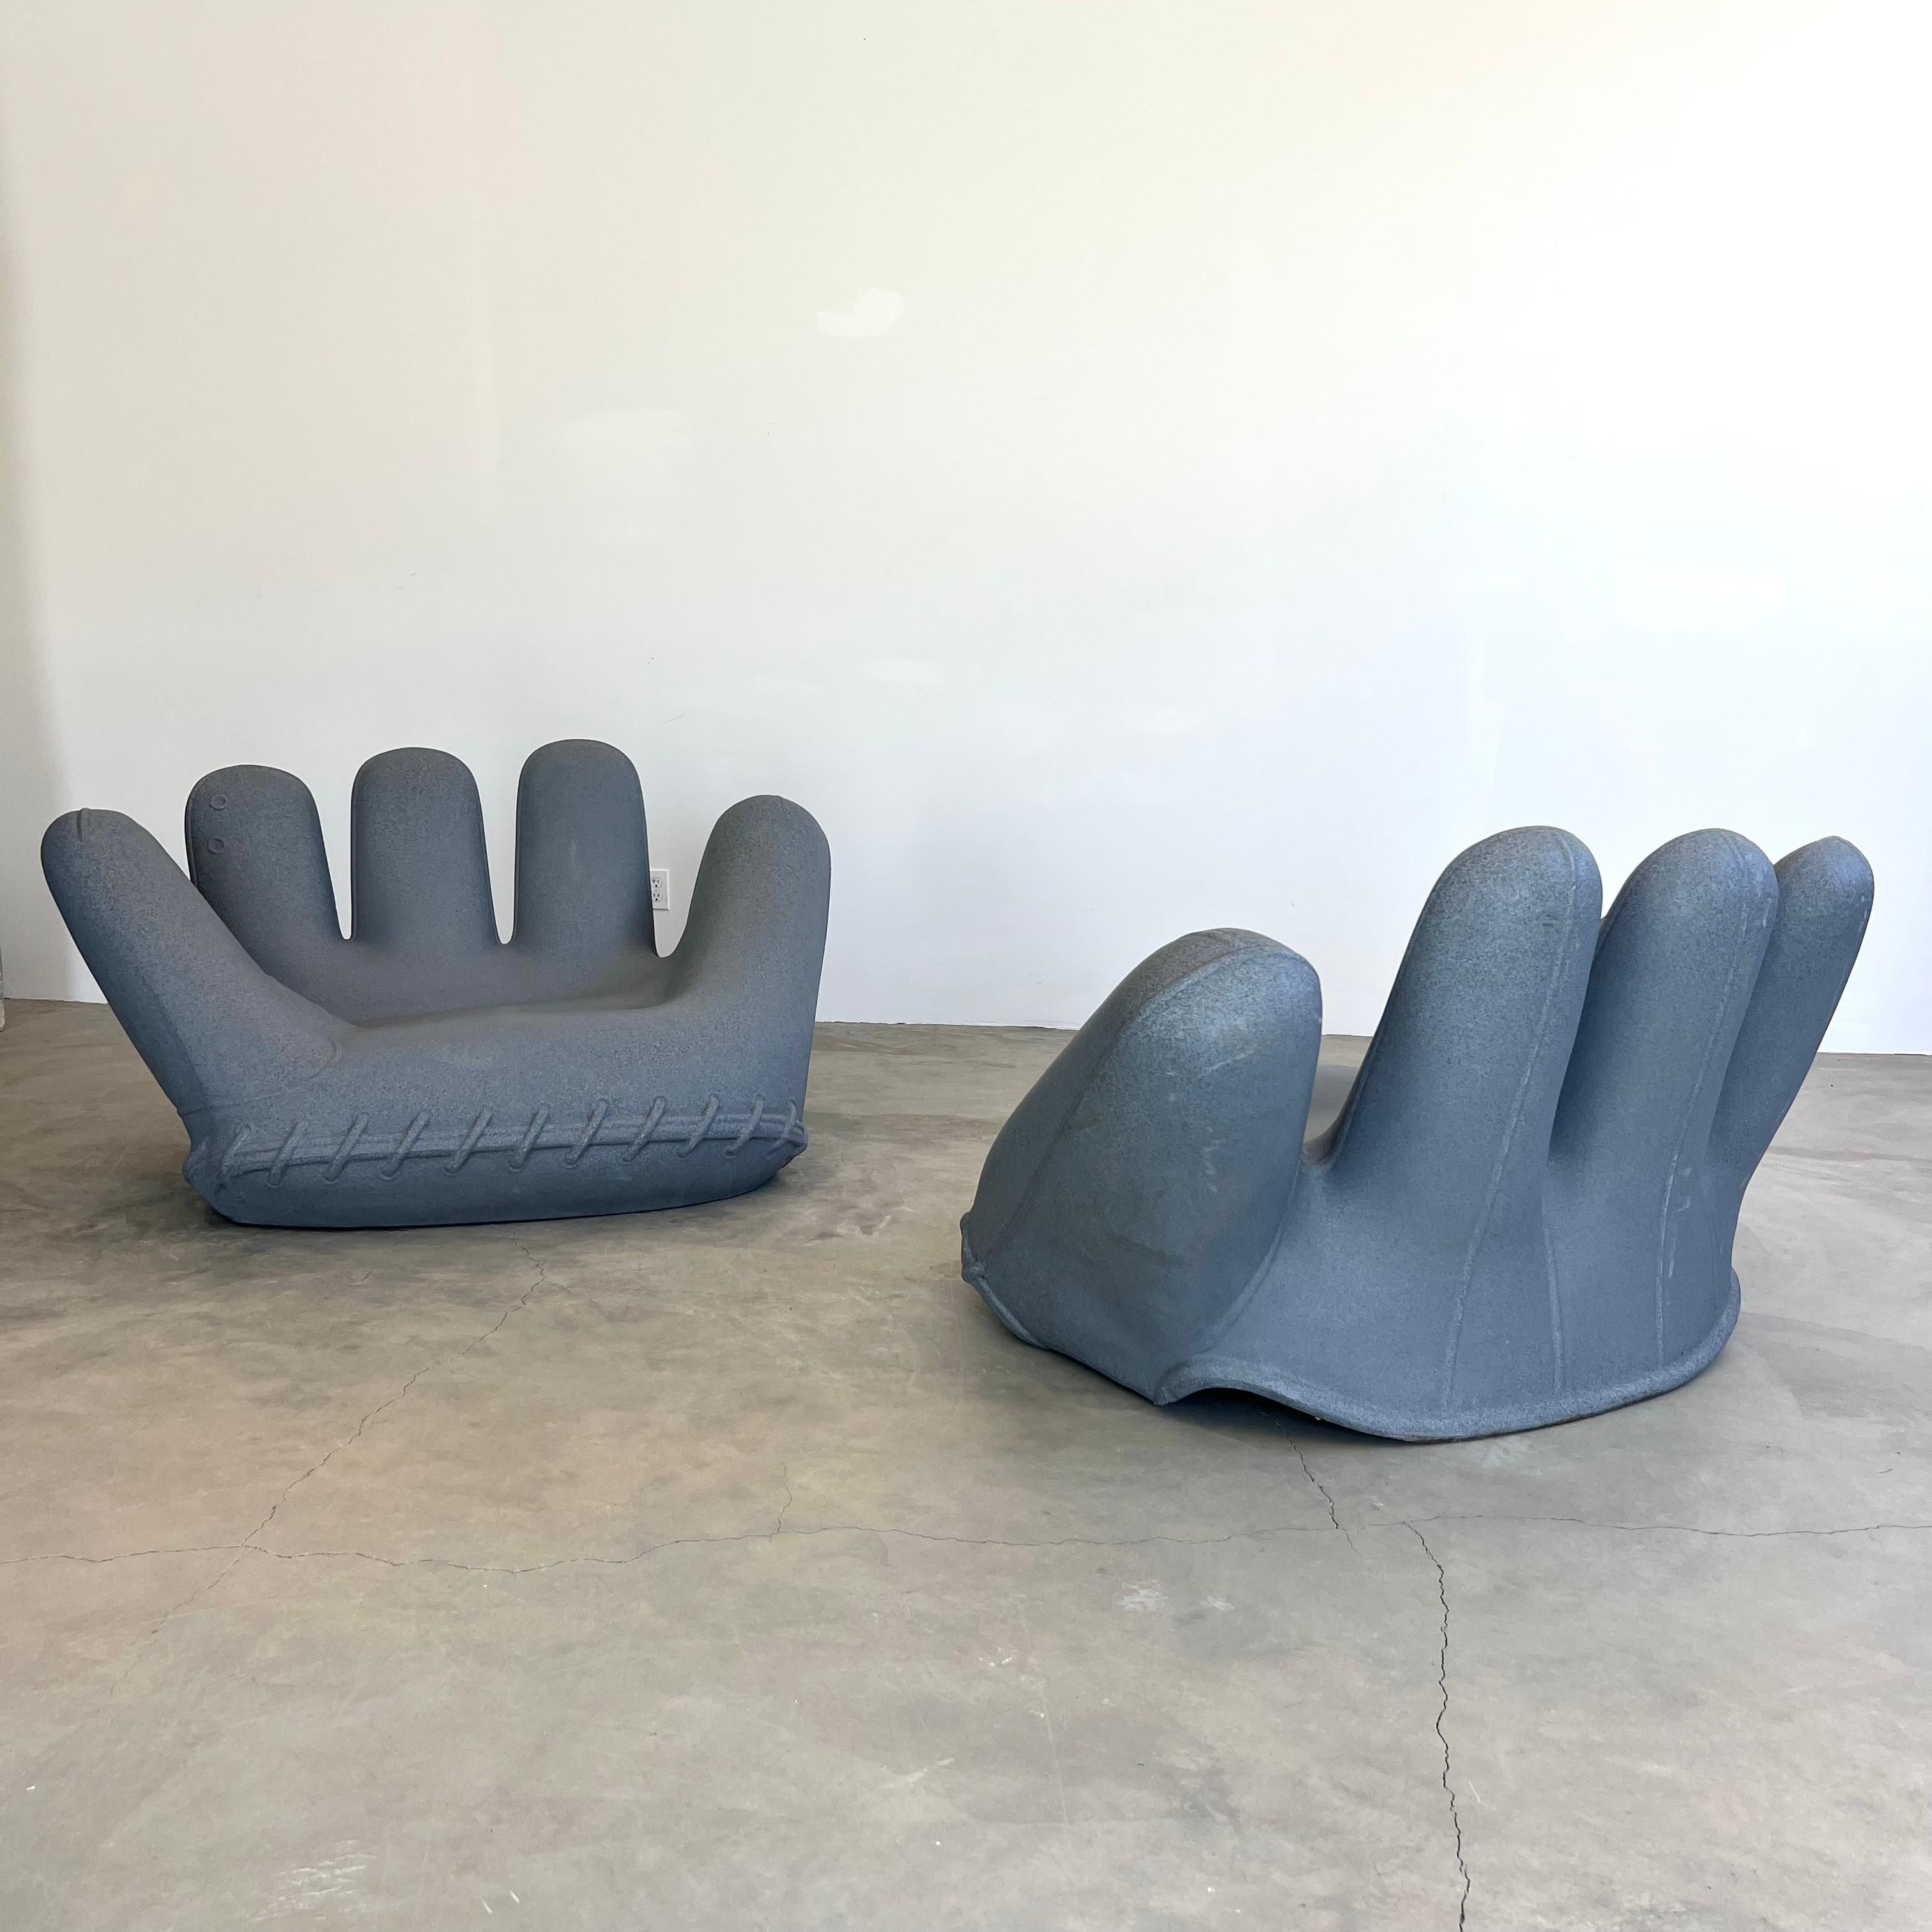 Monumentaler Handschuhsessel 'JOE' für Heller. Ursprünglich von Jonathan De Pas, Donato D'Urbino und Paolo Lomazzi in den 1970er Jahren entworfen und 2003 für Heller aus einem dicken Kunststoff für den Außenbereich hergestellt. Heller Label und